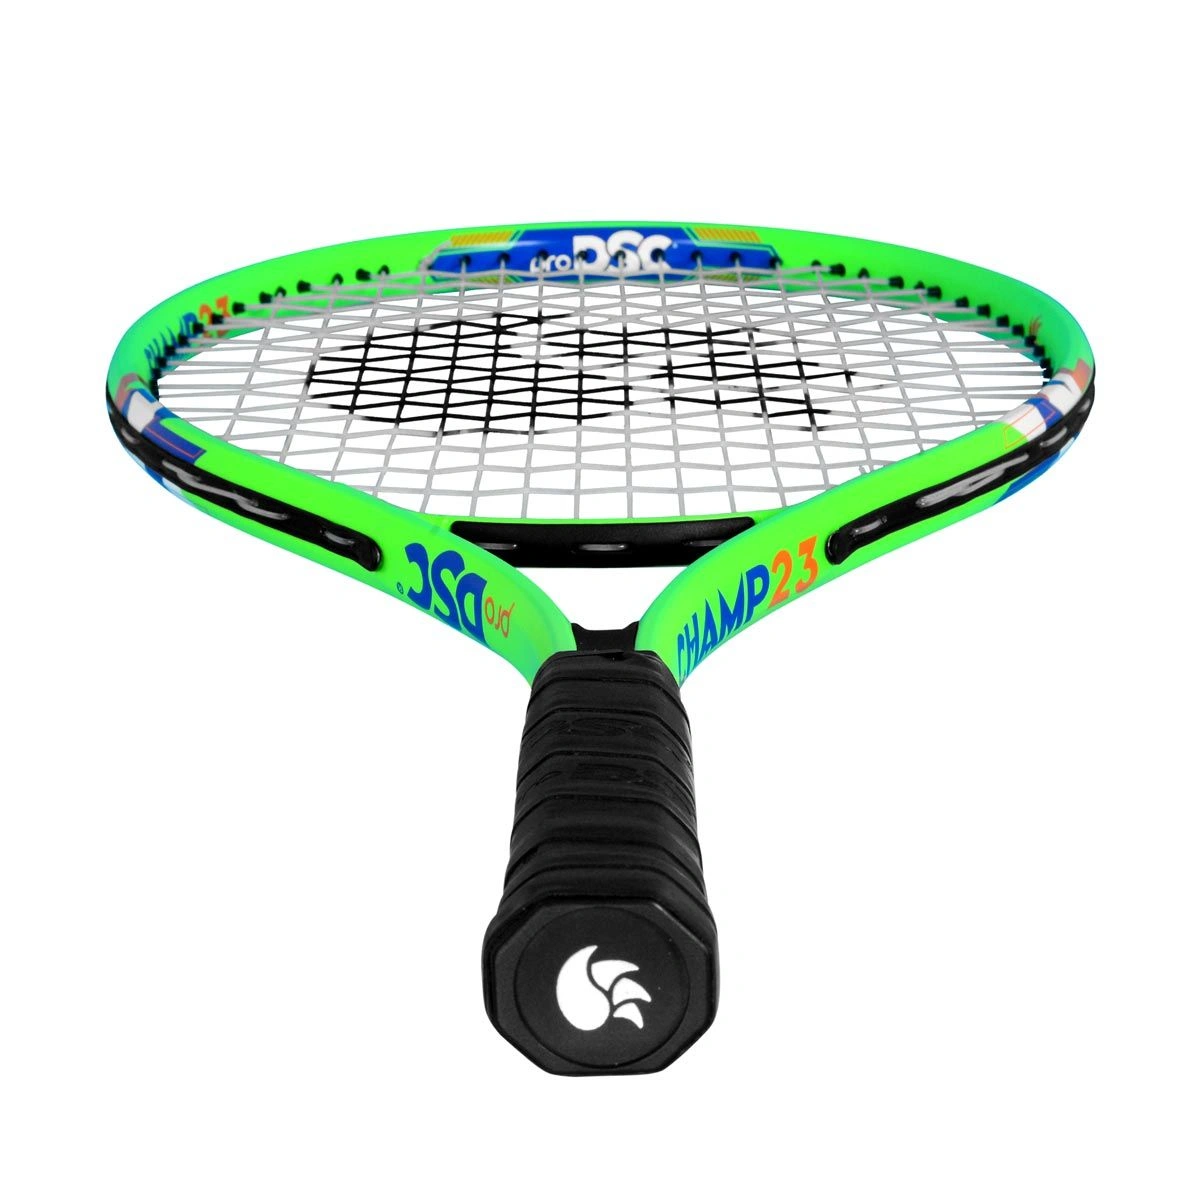 DSC Champ Aluminum Tennis Racquet: Lightweight, Durable, and Powerful Racquet for Beginners and Junior Players-GREEN-23-3